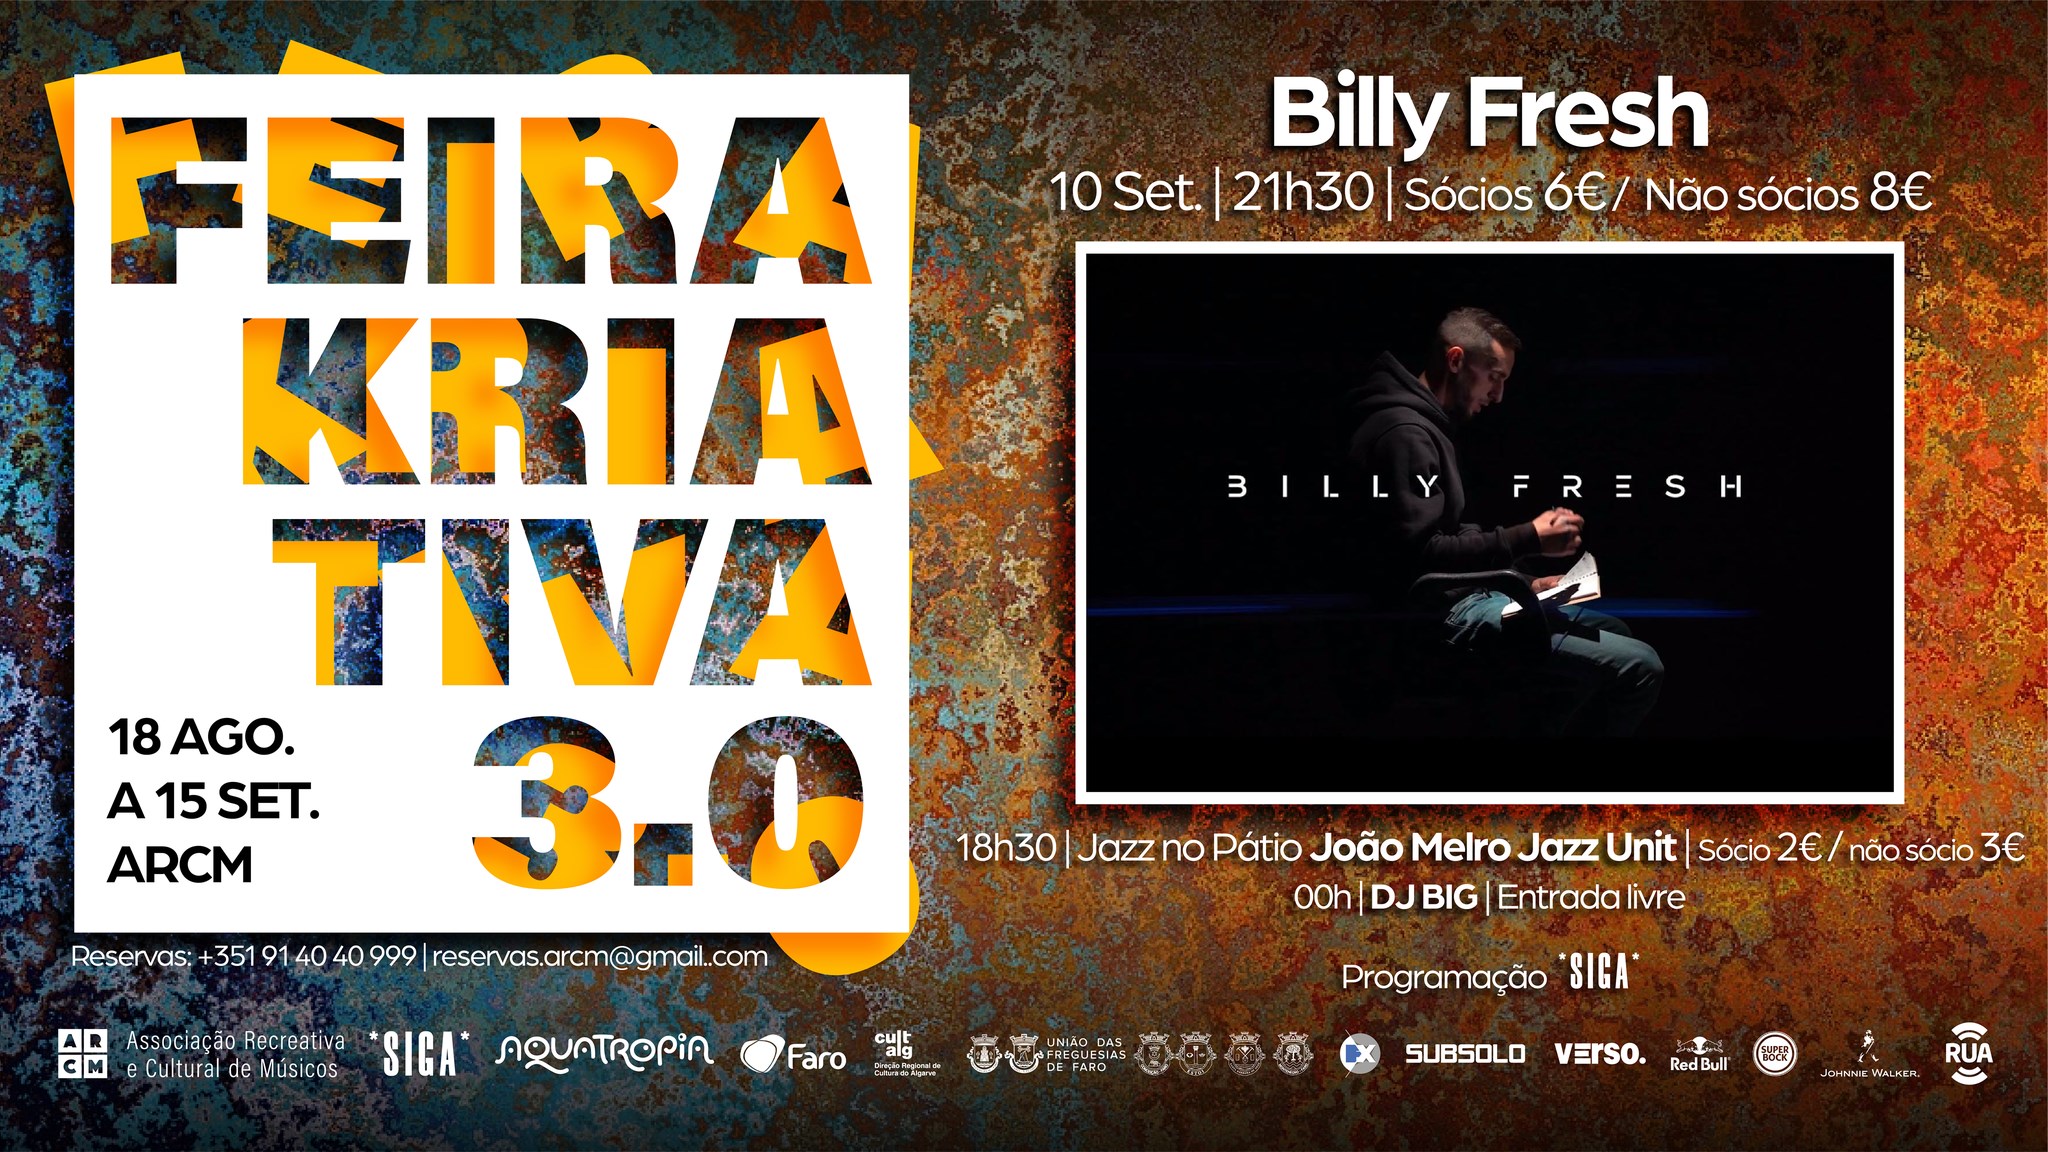 Feira Kriativa 3.0 | Jazz no Pátio - João Melro Jazz Unit |  Billy Fresh | DJ BIG